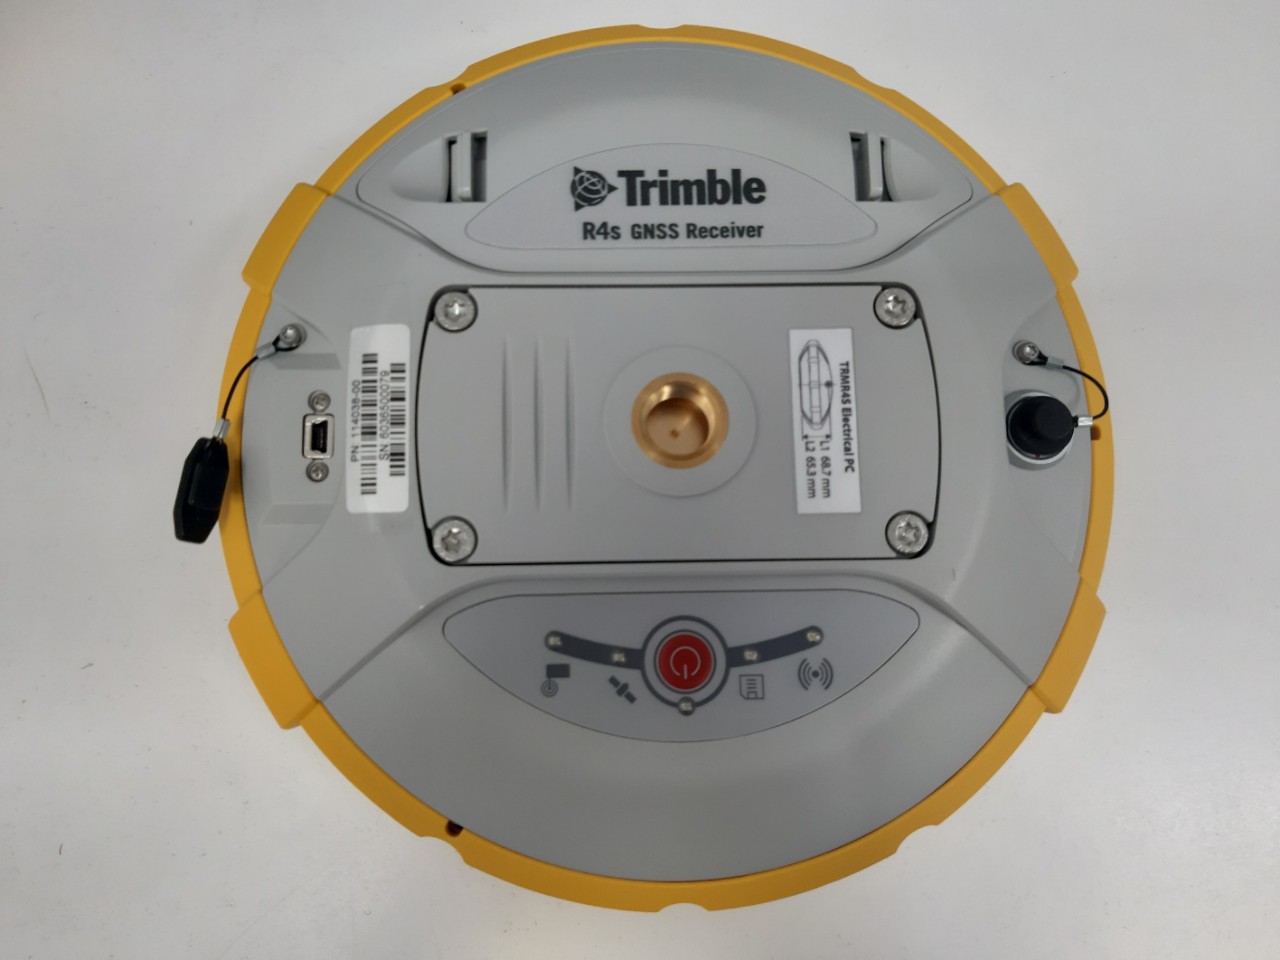 Trimble R4s đáp ứng được mọi nhu cầu, phù hợp với nhiều nhu cầu khảo sát và quá trình xử lý sau đơn giản, từ GIS cho đến các giải pháp tinh vi có khả năng RTK và Trimble RTX.